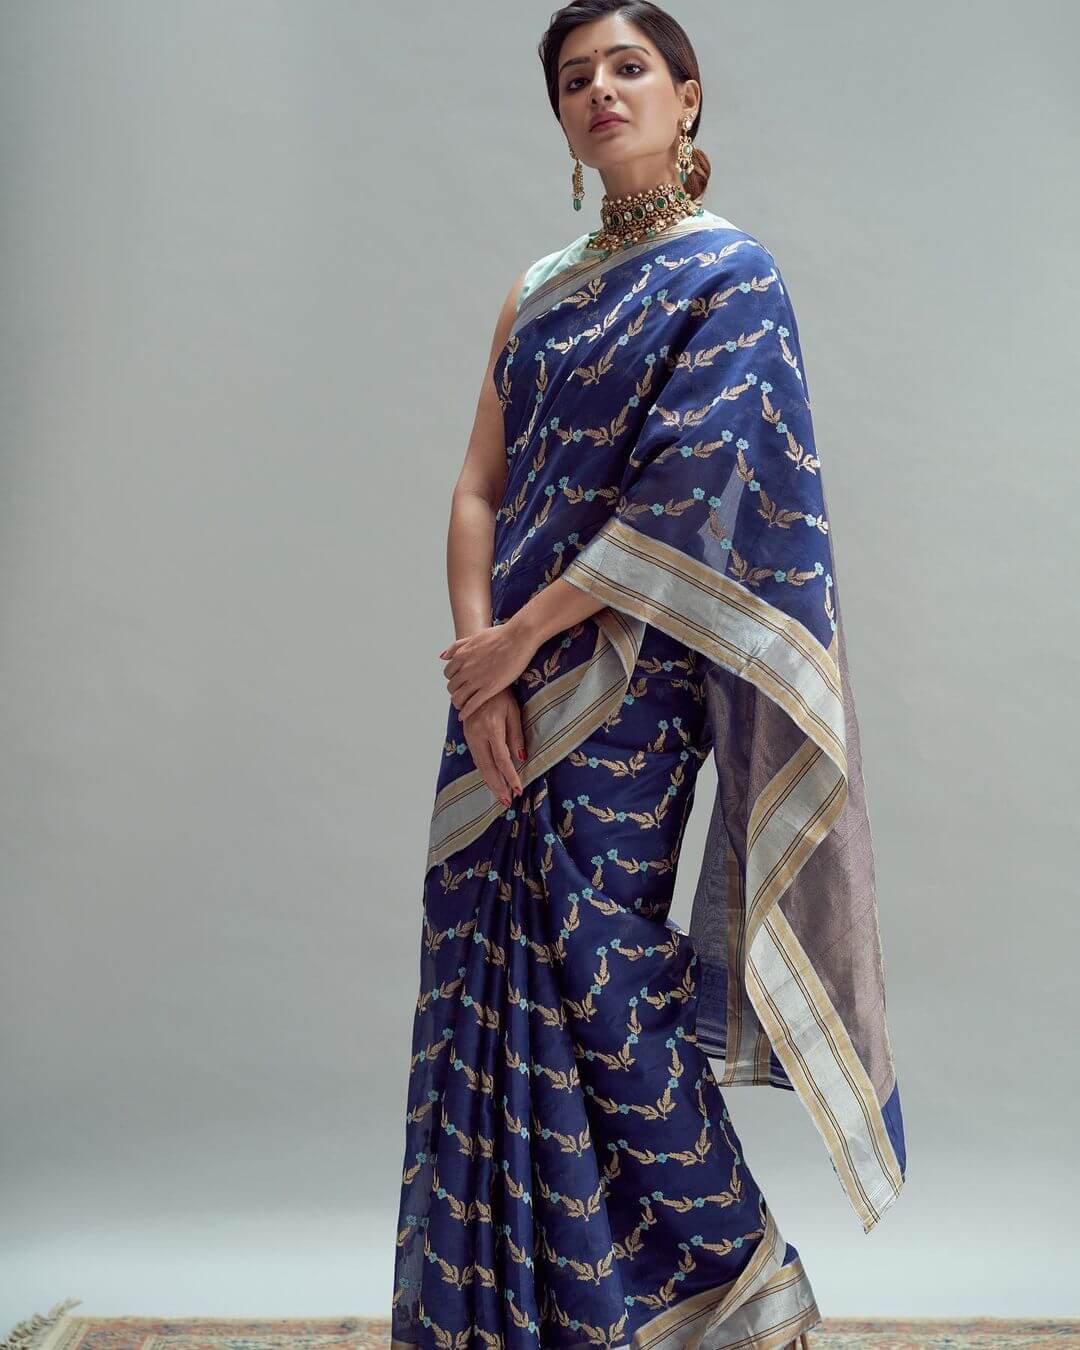 South star Samantha Akkineni in blue printed saree by Rana-miheeka